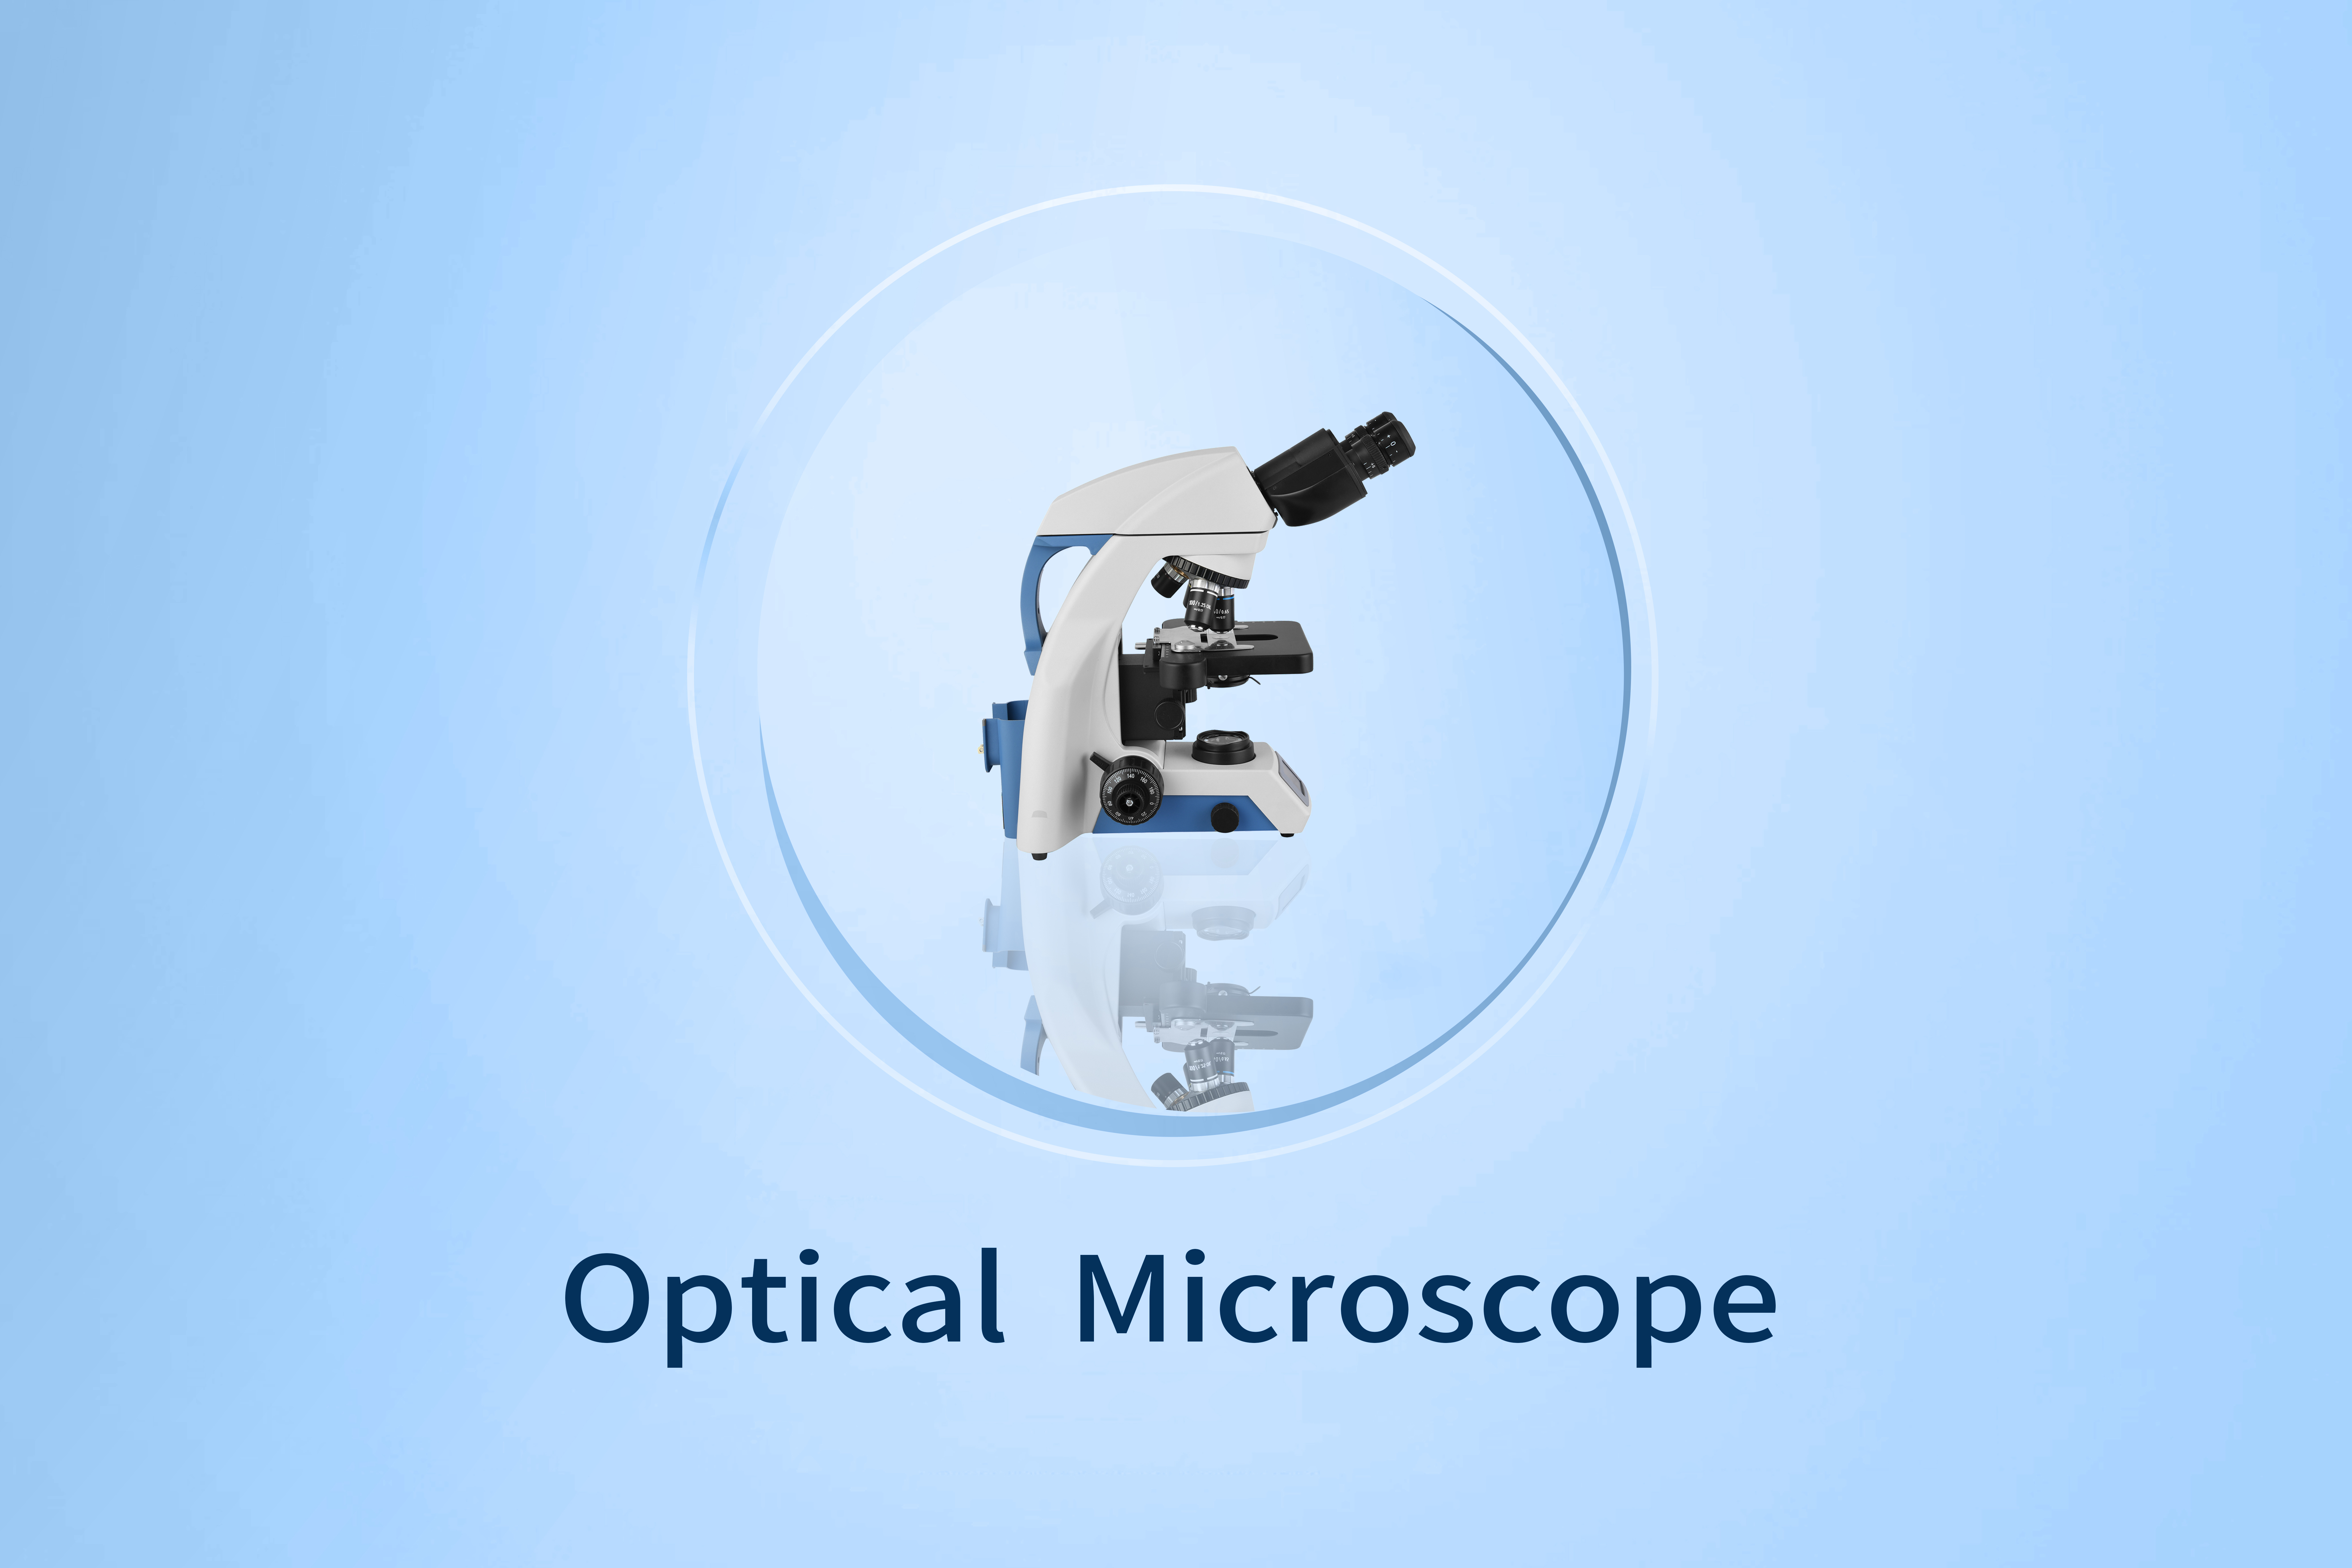 Çend cureyên mîkroskopên optîkî?